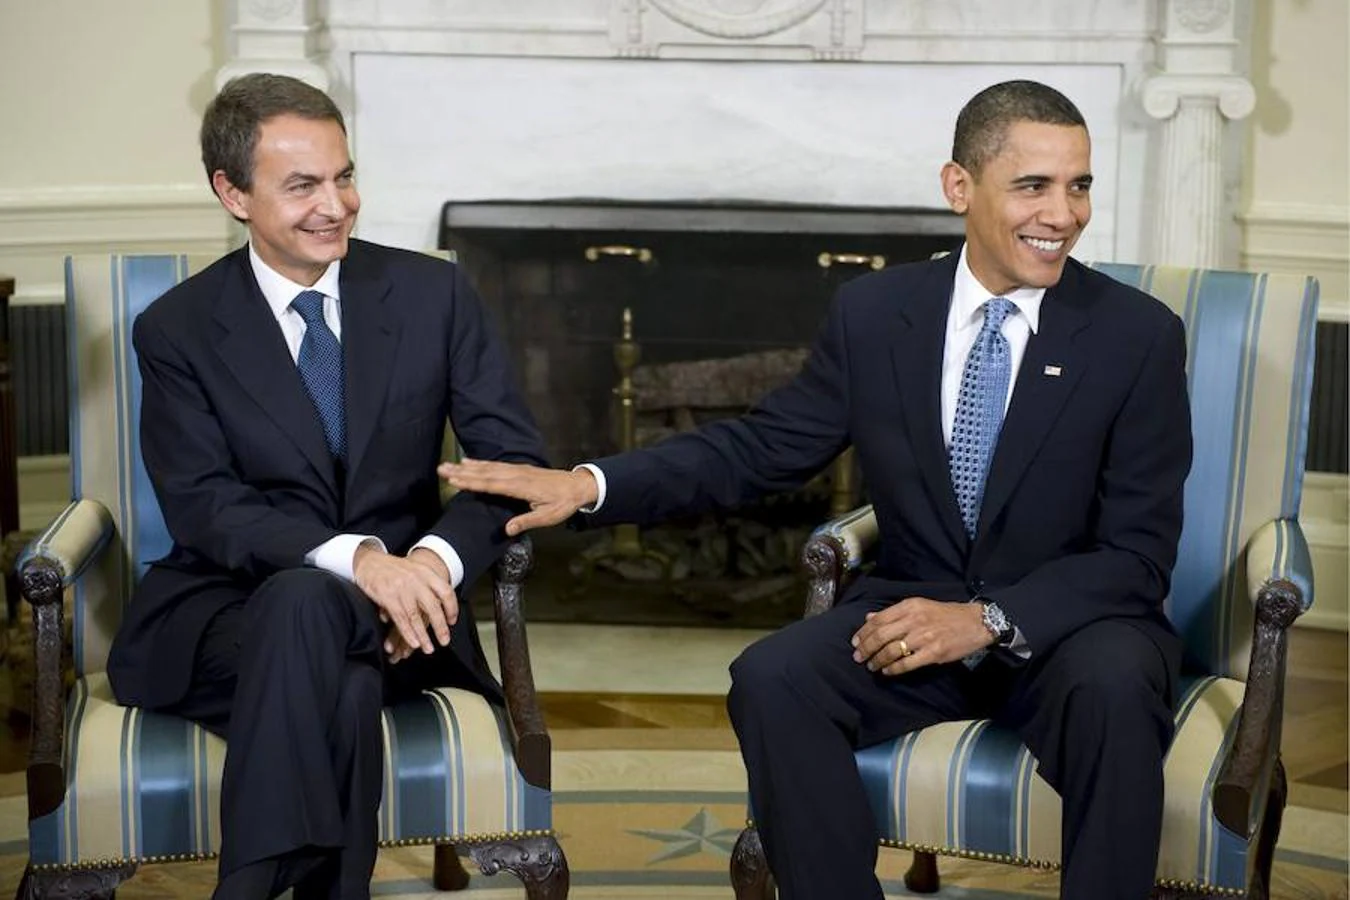 El entonces presidente del Gobierno, José Luis Rodríguez Zapatero, viajó a la Casa Blanca en octubre de 2009 y se entrevistó con el recién inquilino, Barack Obama. De este modo, Zapatero cumplió su sueño y en la conversación que mantuvieron durante casi dos horas hablaron fundamentalmente de Afganistán. 